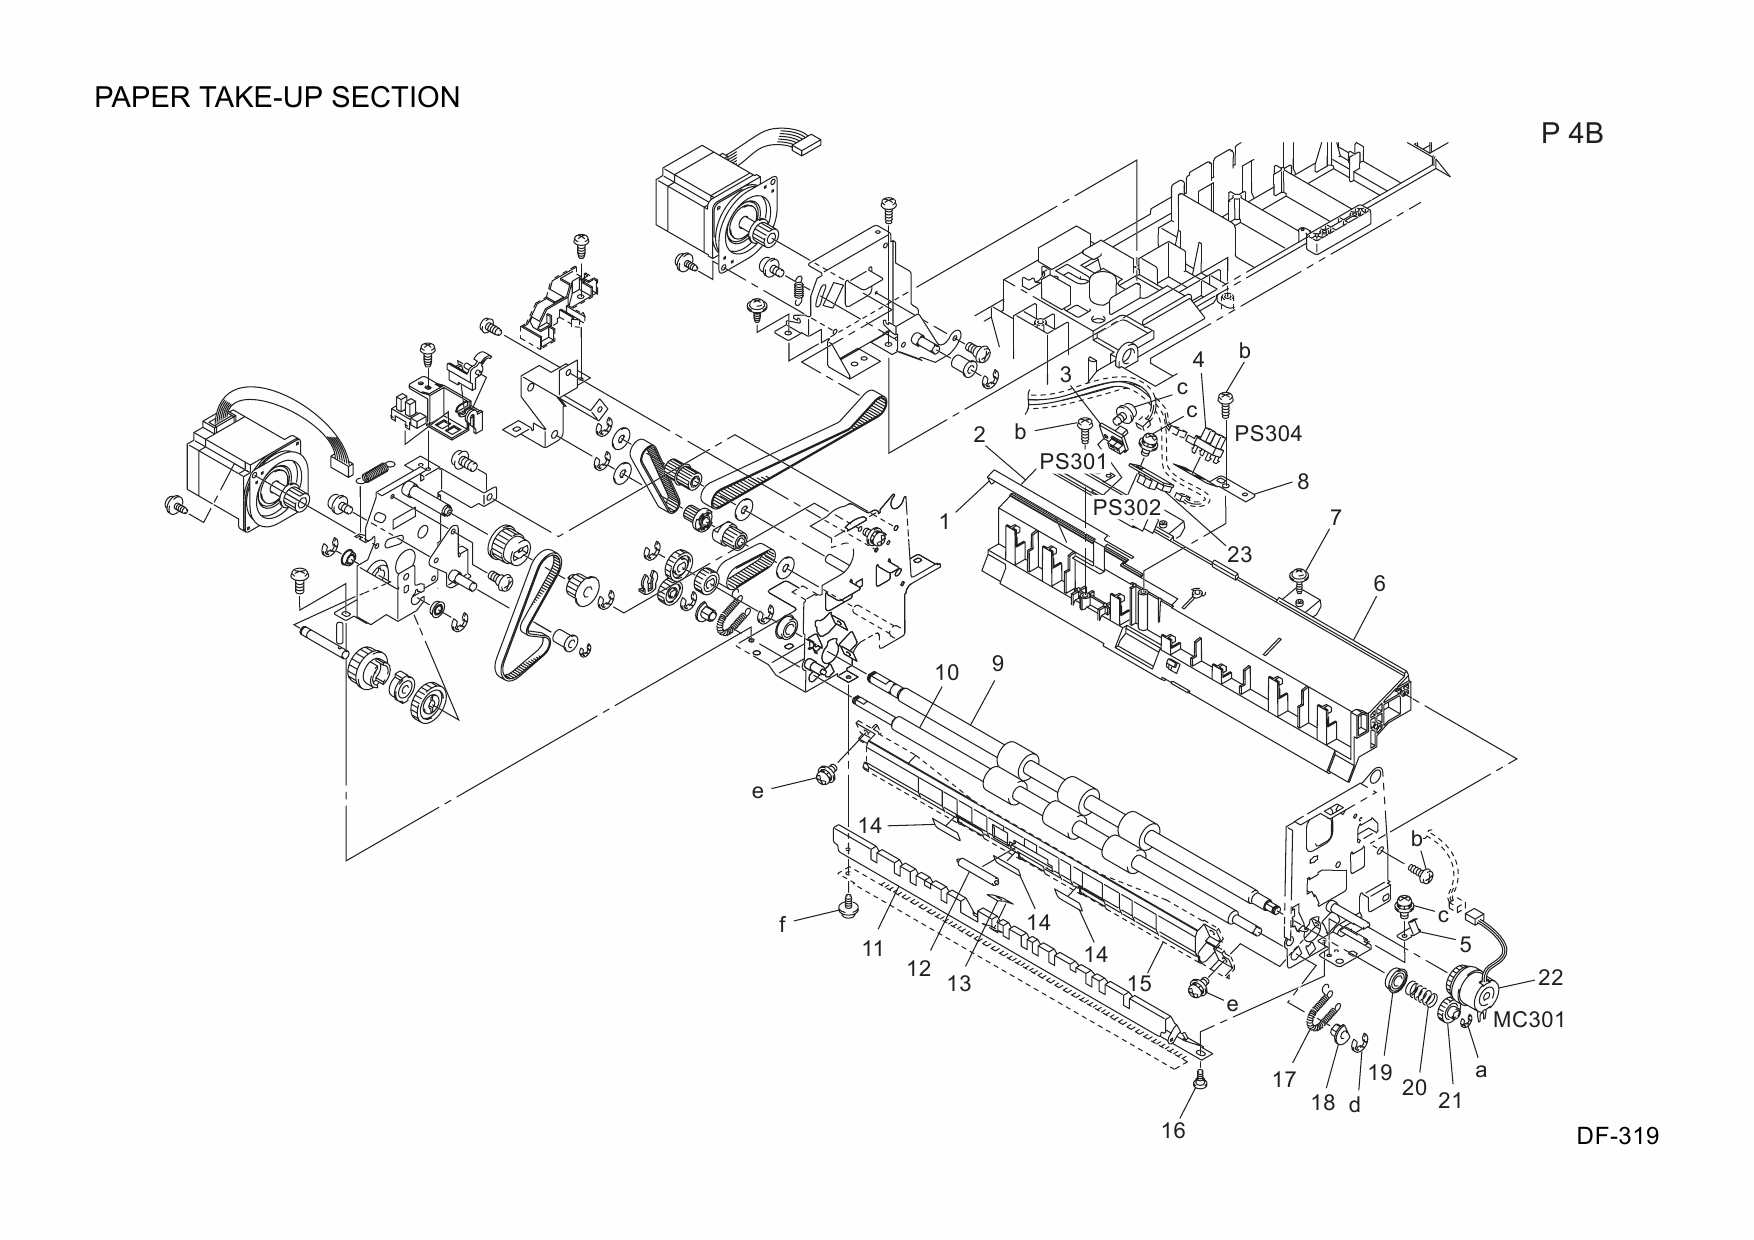 Konica-Minolta Options DF-319 20AJ Parts Manual-2